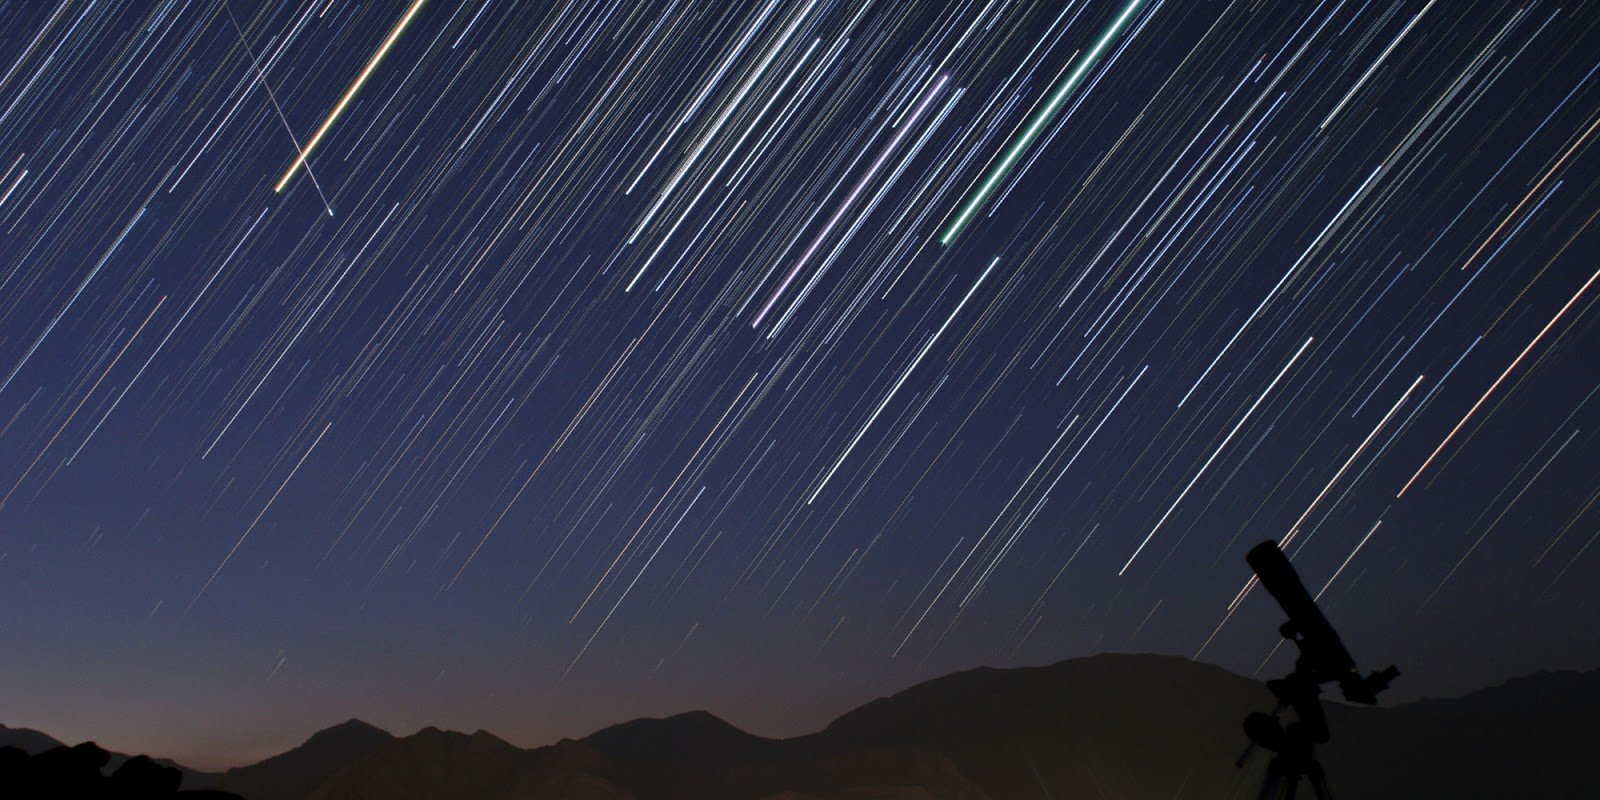 ¡Este 8 de octubre! Lluvia de estrellas Dracónidas promete un gran espectáculo astronómico